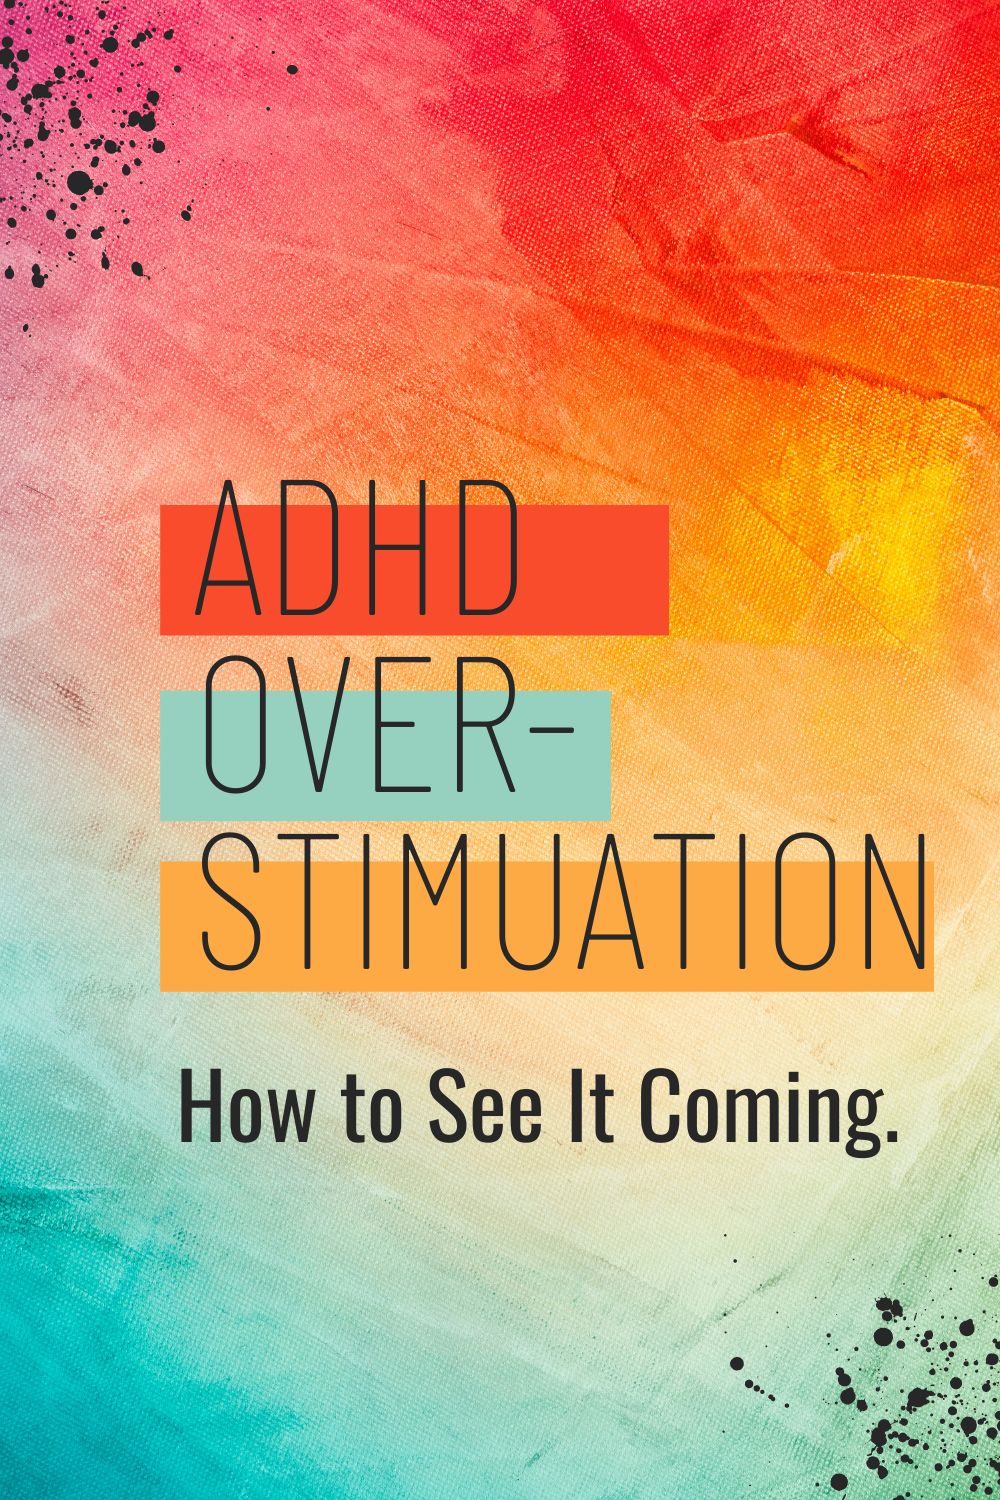 ADHD Overstimulation